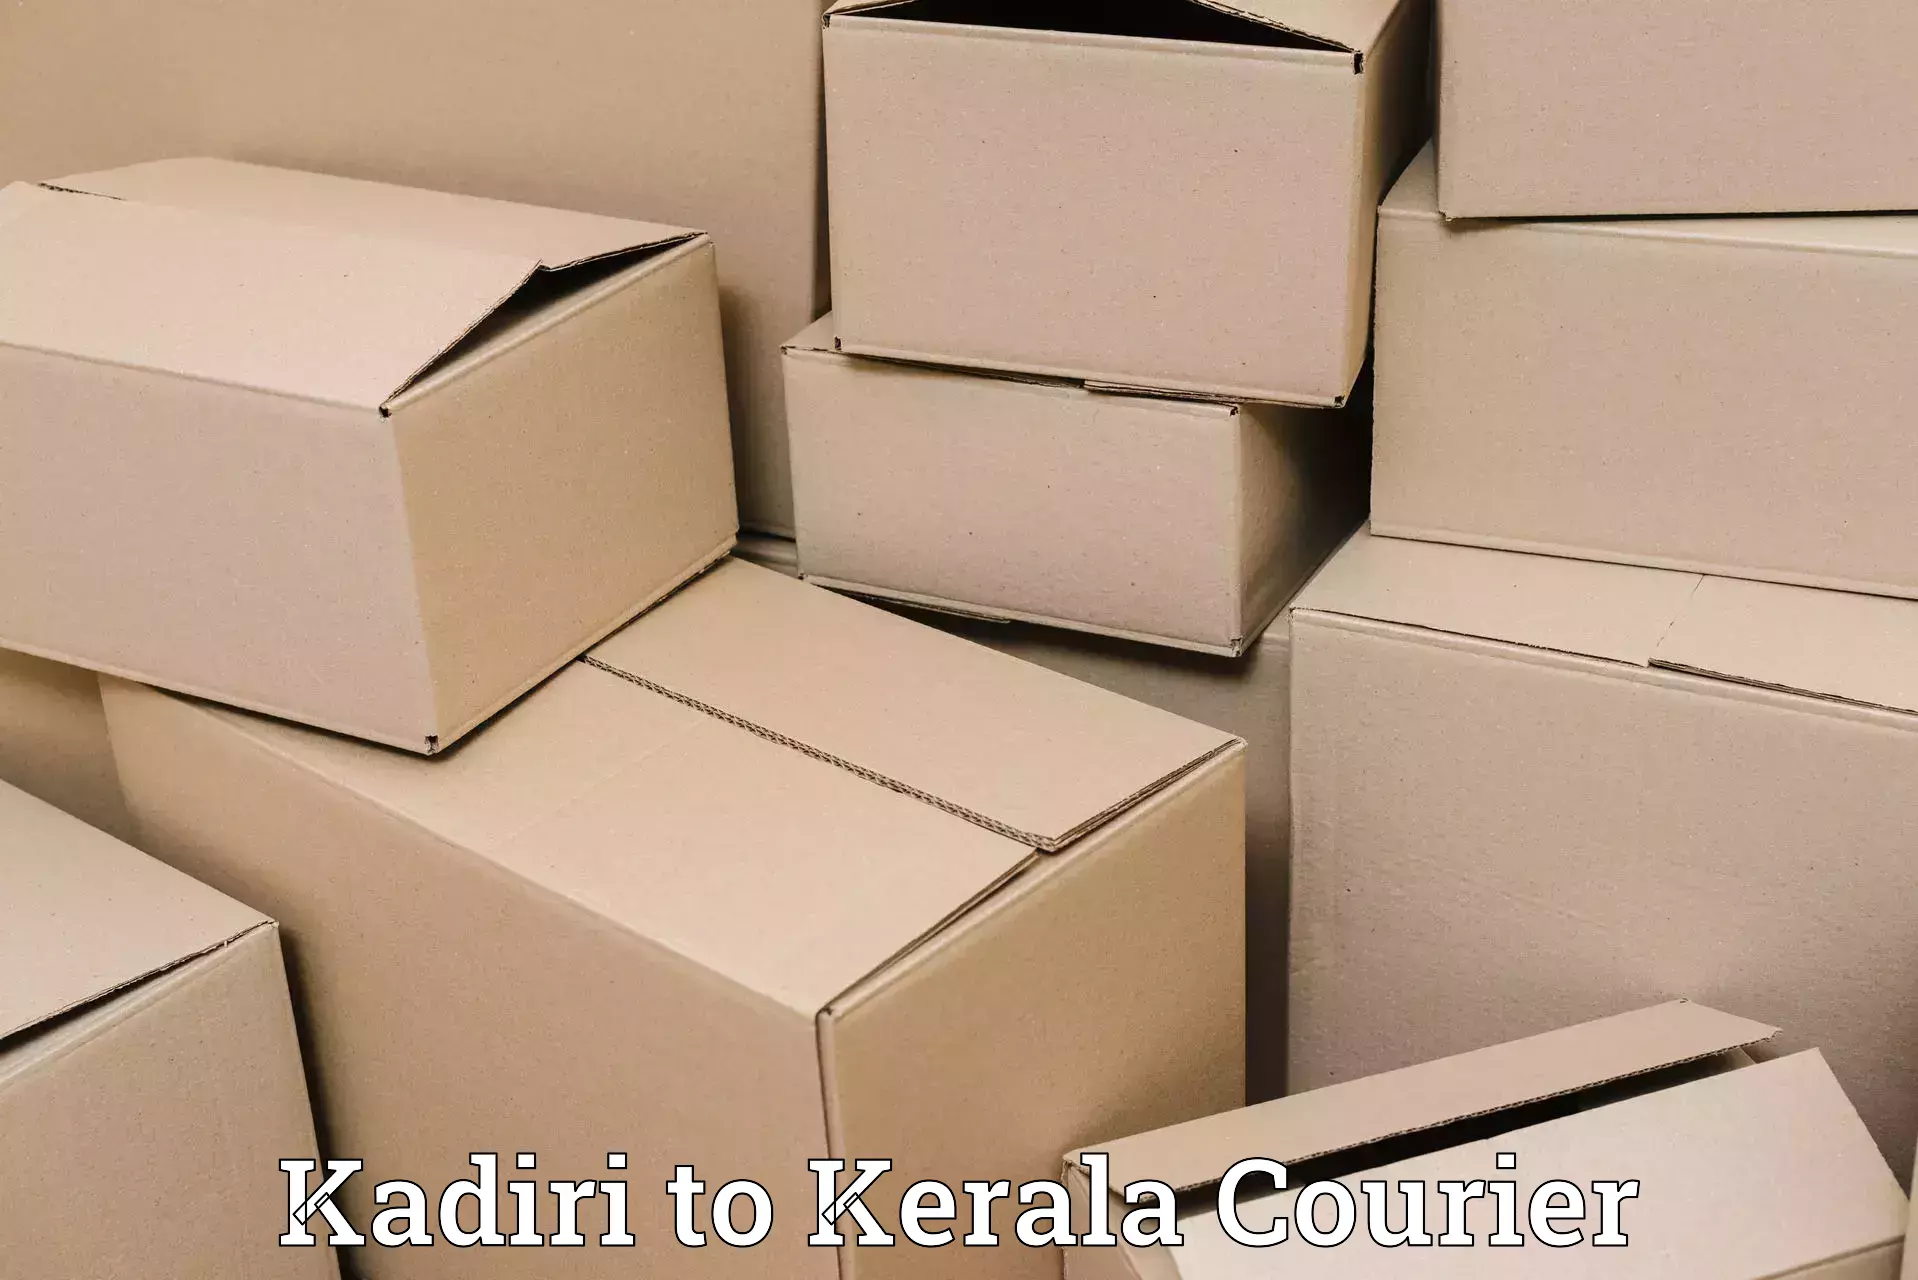 Discount courier rates Kadiri to Kallachi